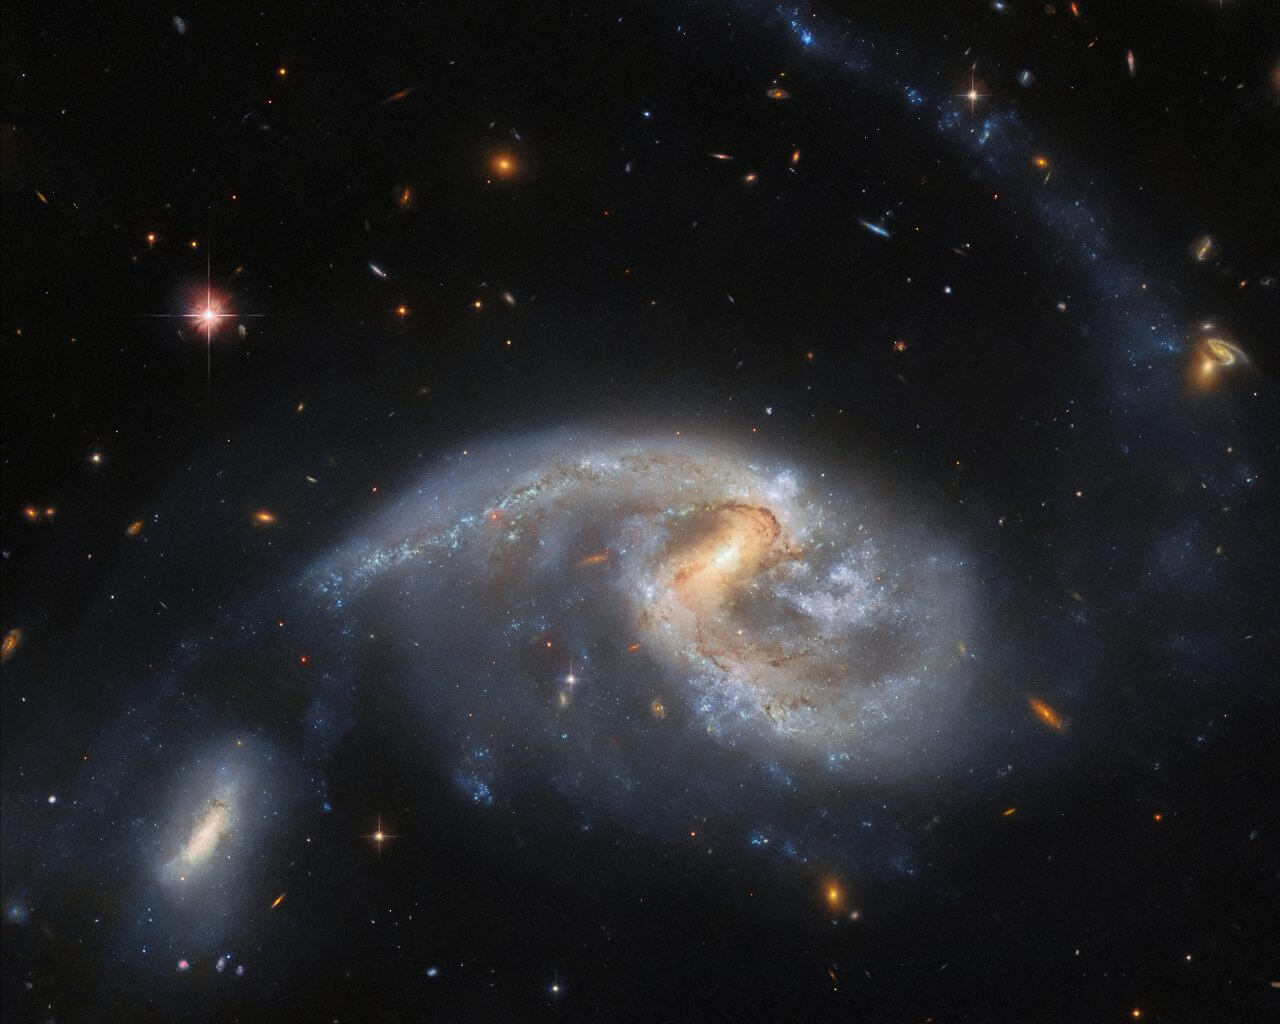 【▲ 相互作用銀河「Arp 72」。銀河の名前は中央が「NGC 5996」、左下が「NGC 5994」（Credit: ESA/Hubble & NASA, L. Galbany, J. Dalcanton, Dark Energy Survey/DOE/FNAL/DECam/CTIO/NOIRLab/NSF/AURA）】